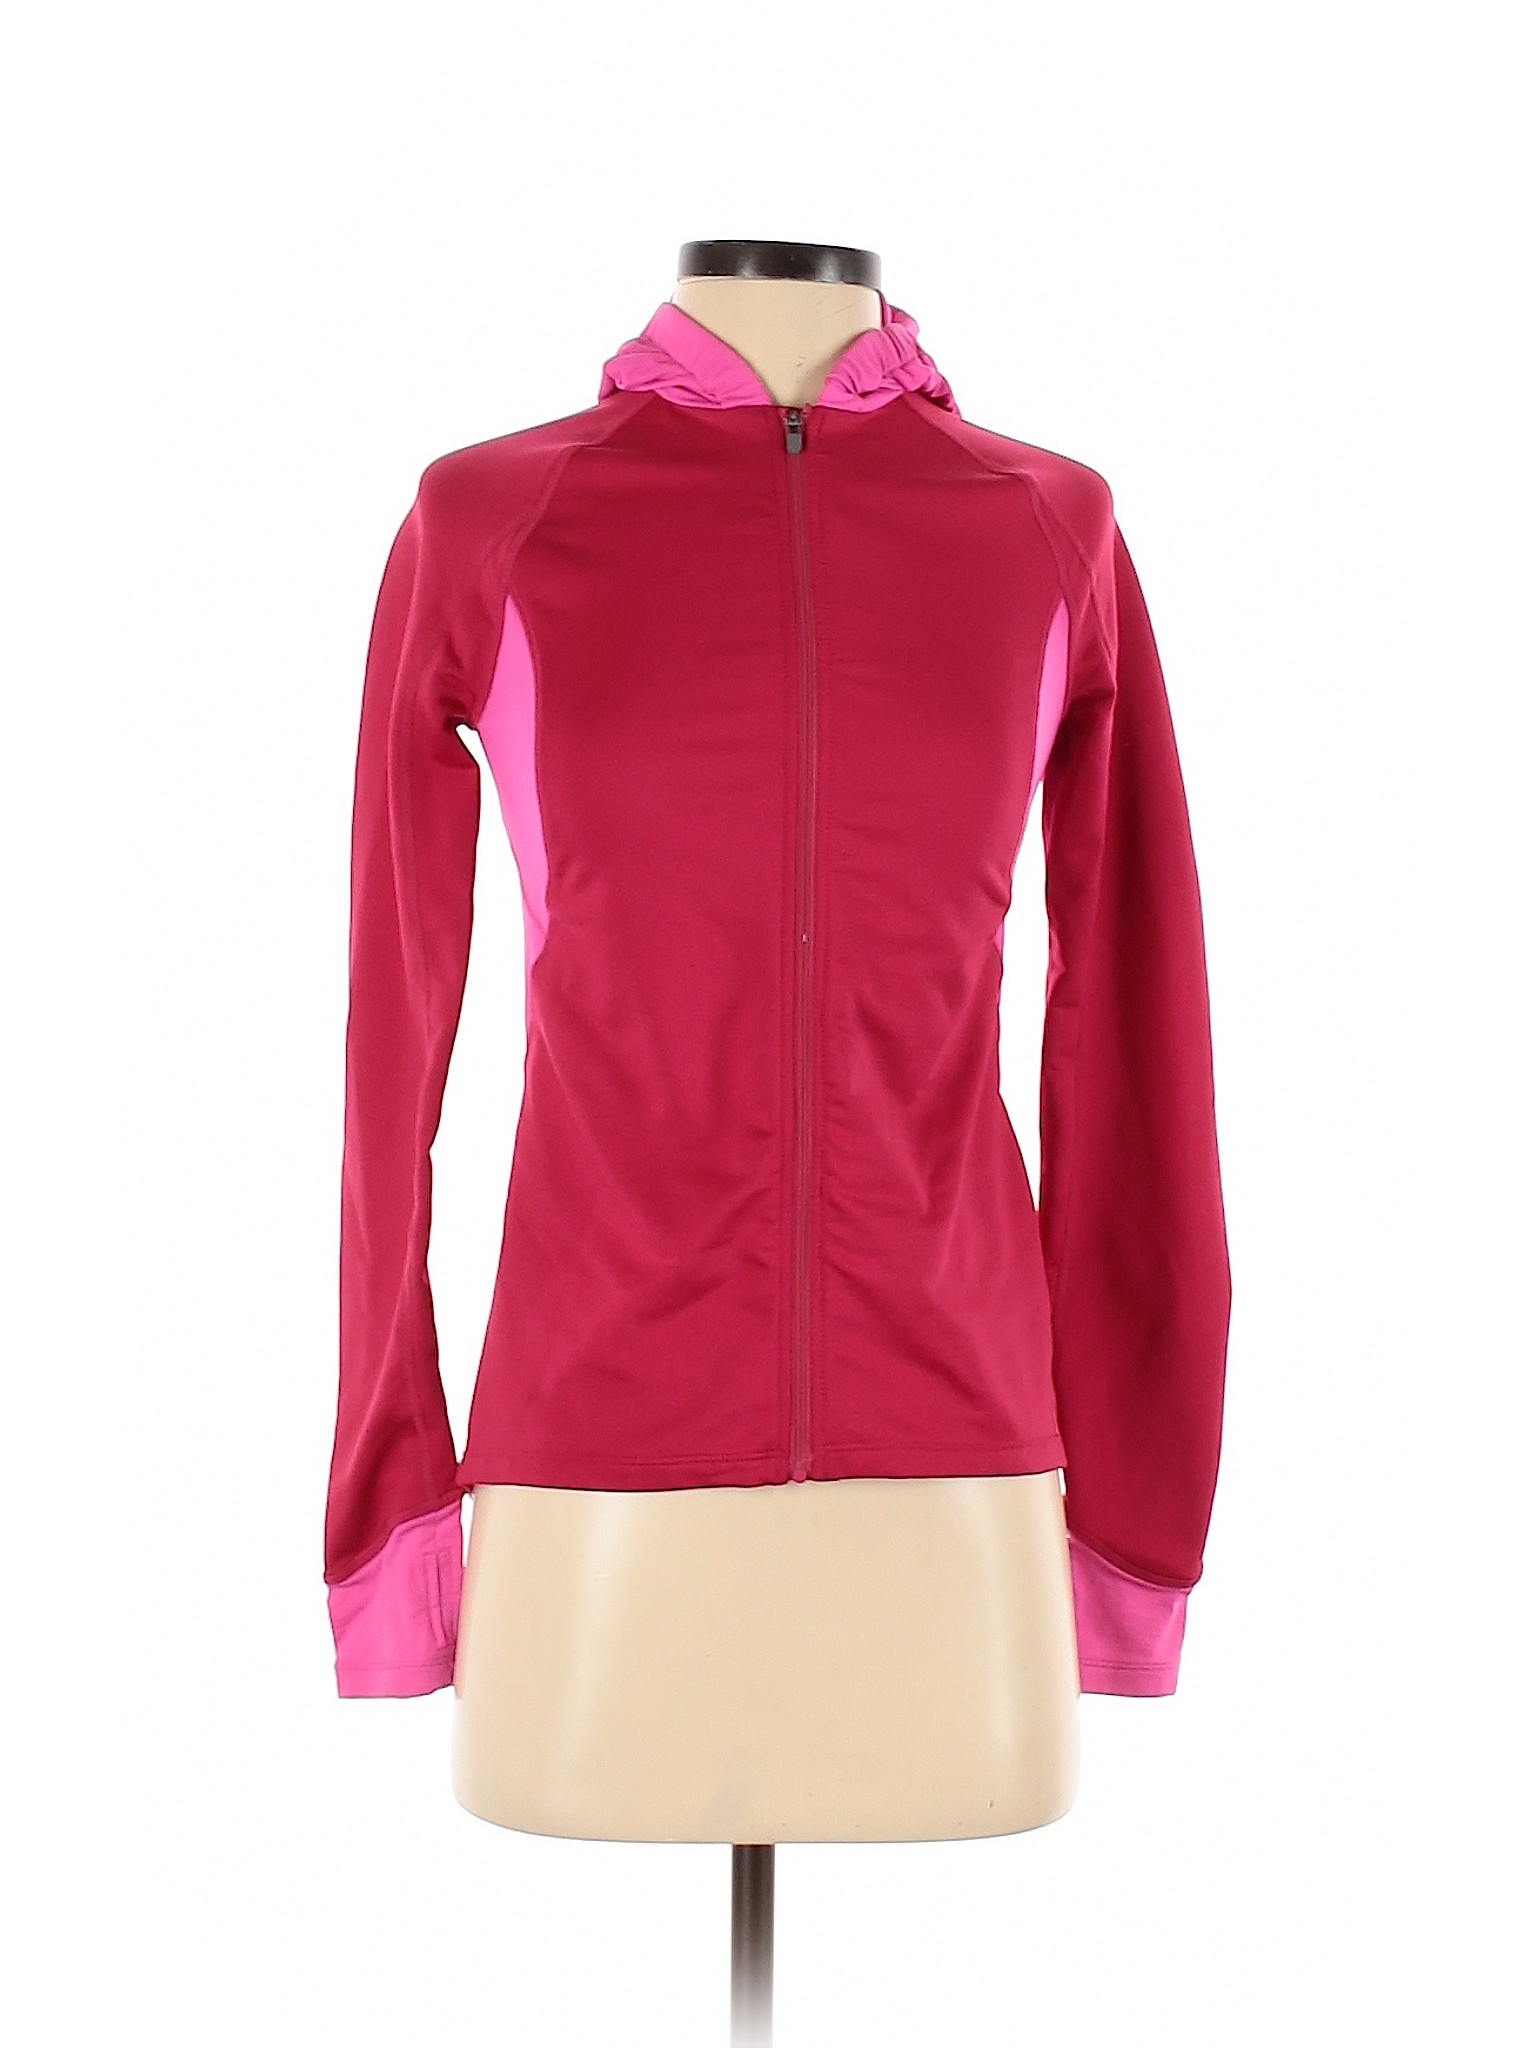 Novara Women Red Track Jacket XS | eBay